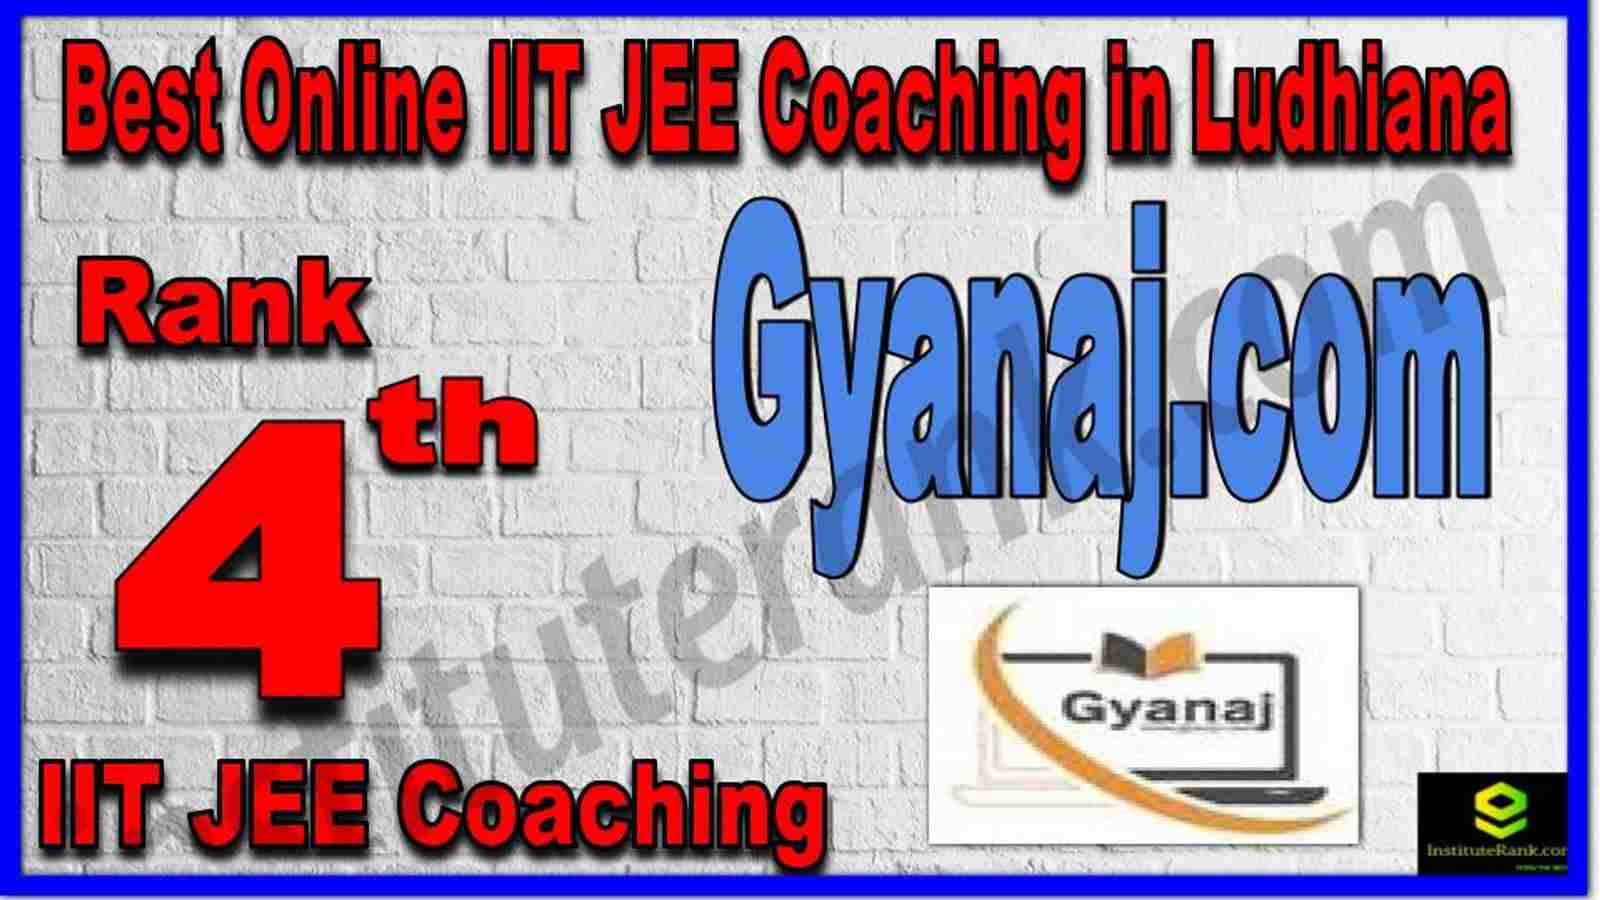 Rank 4th Best Online IIT JEE Coaching in Ludhiana